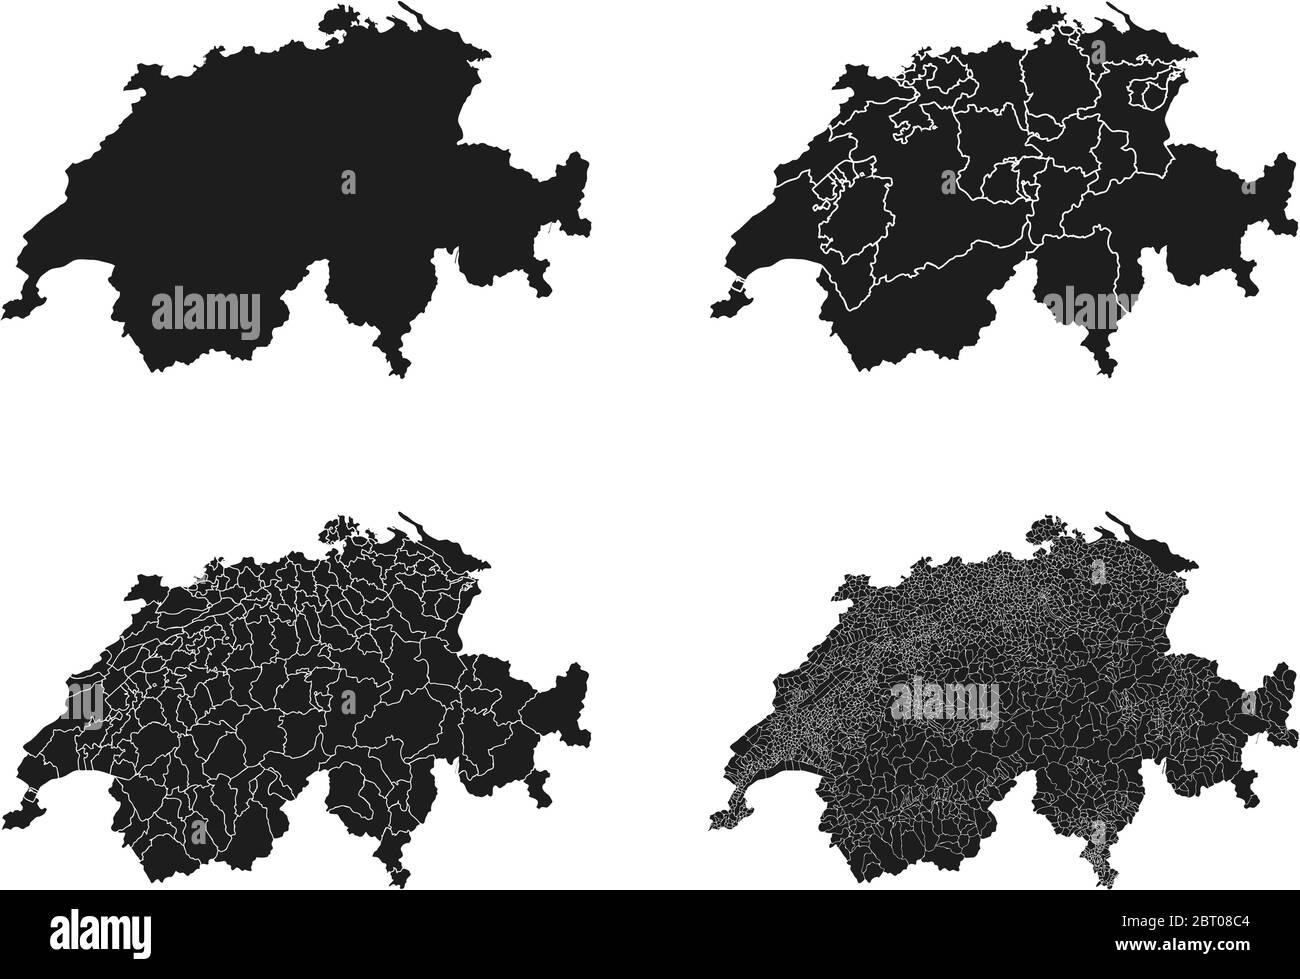 Cartes vectorielles de la Suisse avec régions administratives, municipalités, départements, frontières Illustration de Vecteur